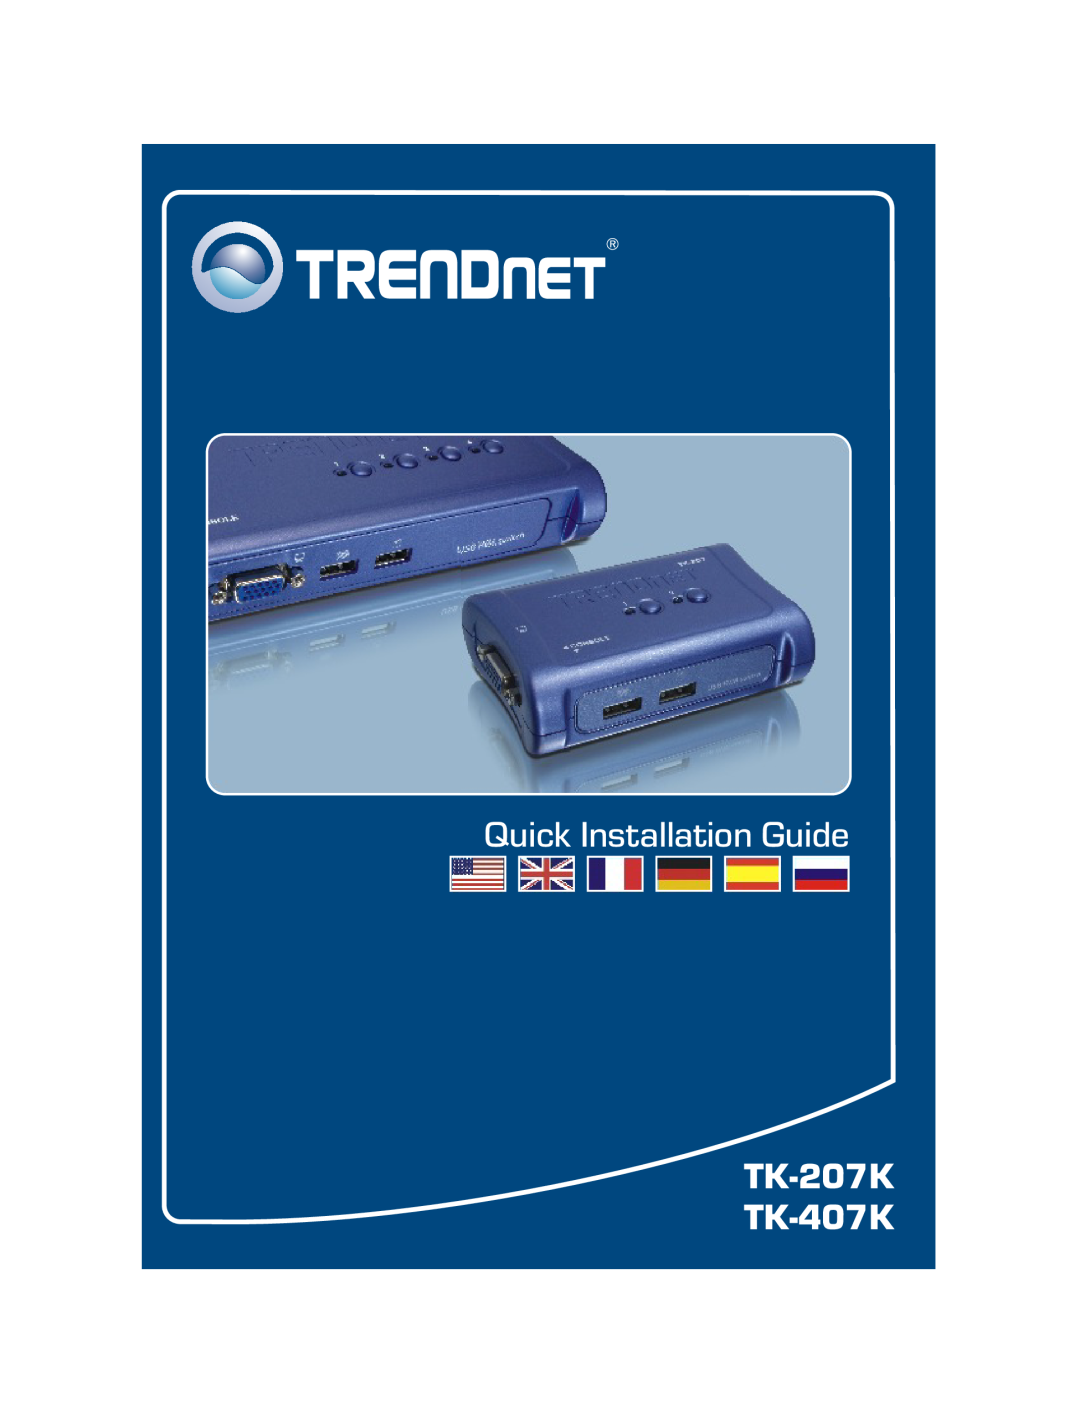 TRENDnet manual Quick Installation Guide, TK-207K TK-407K 